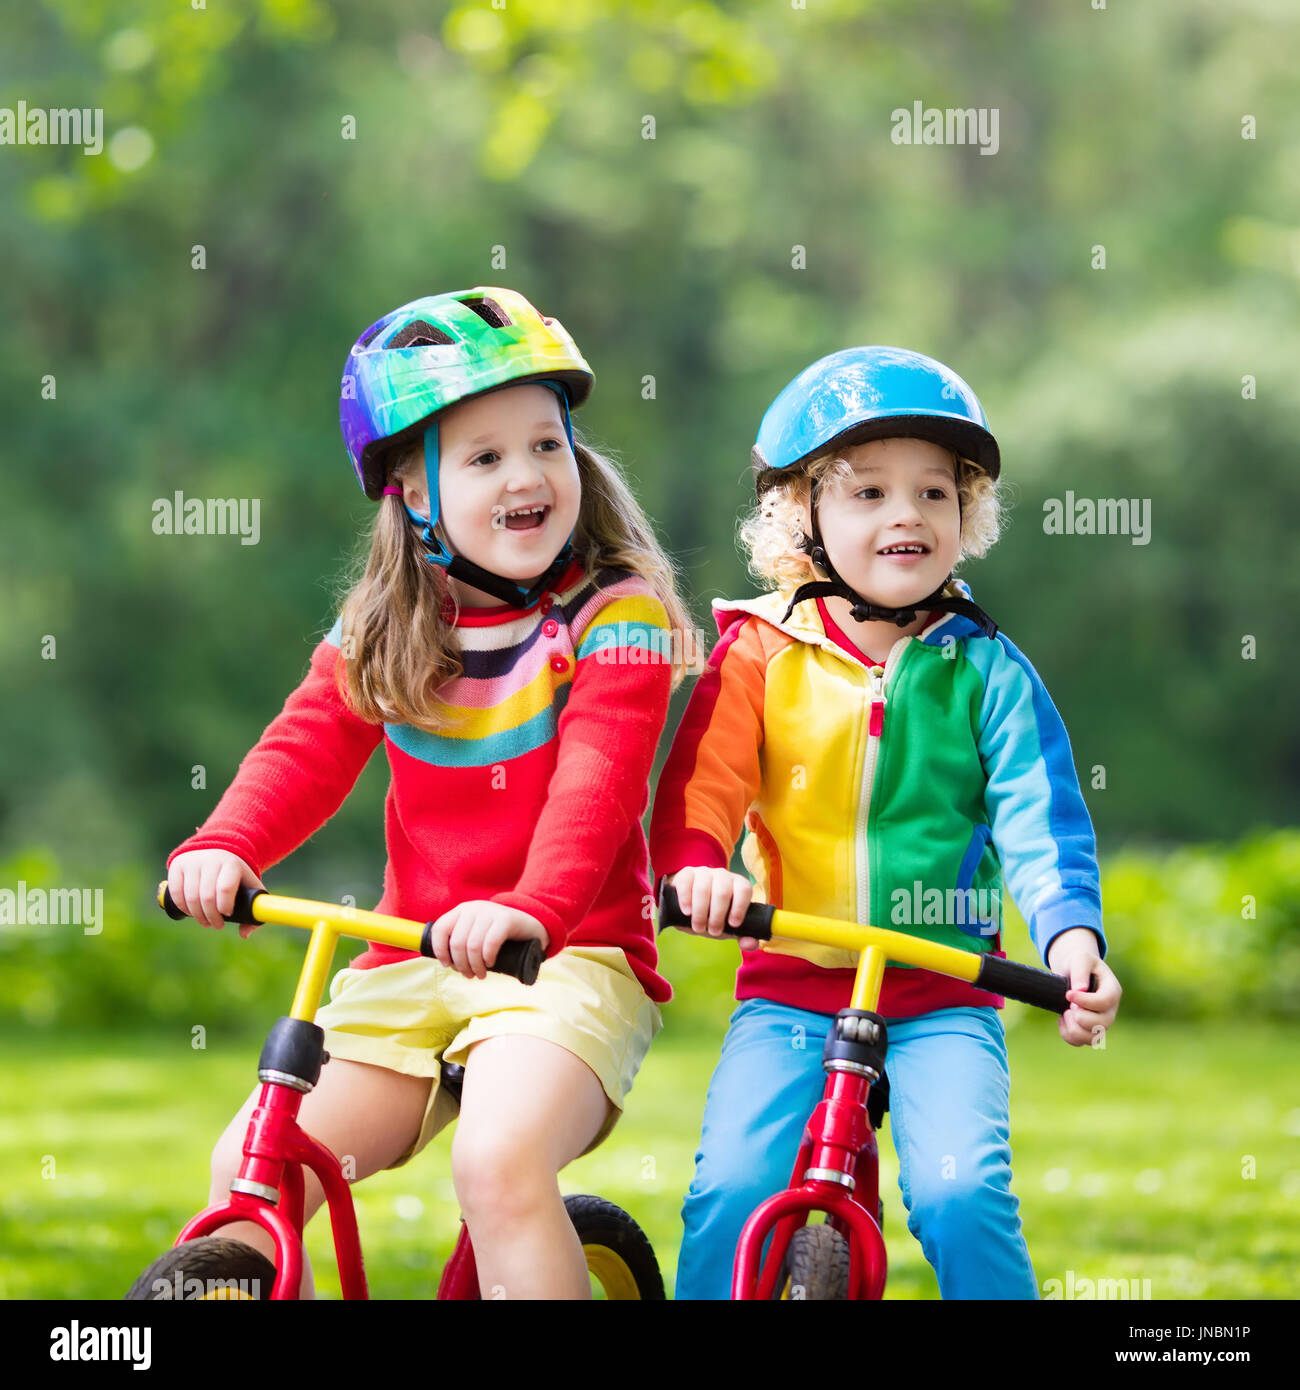 Casco Moto Bici Patin Infantil Niño Niña Cerrado 4 A 7 Años